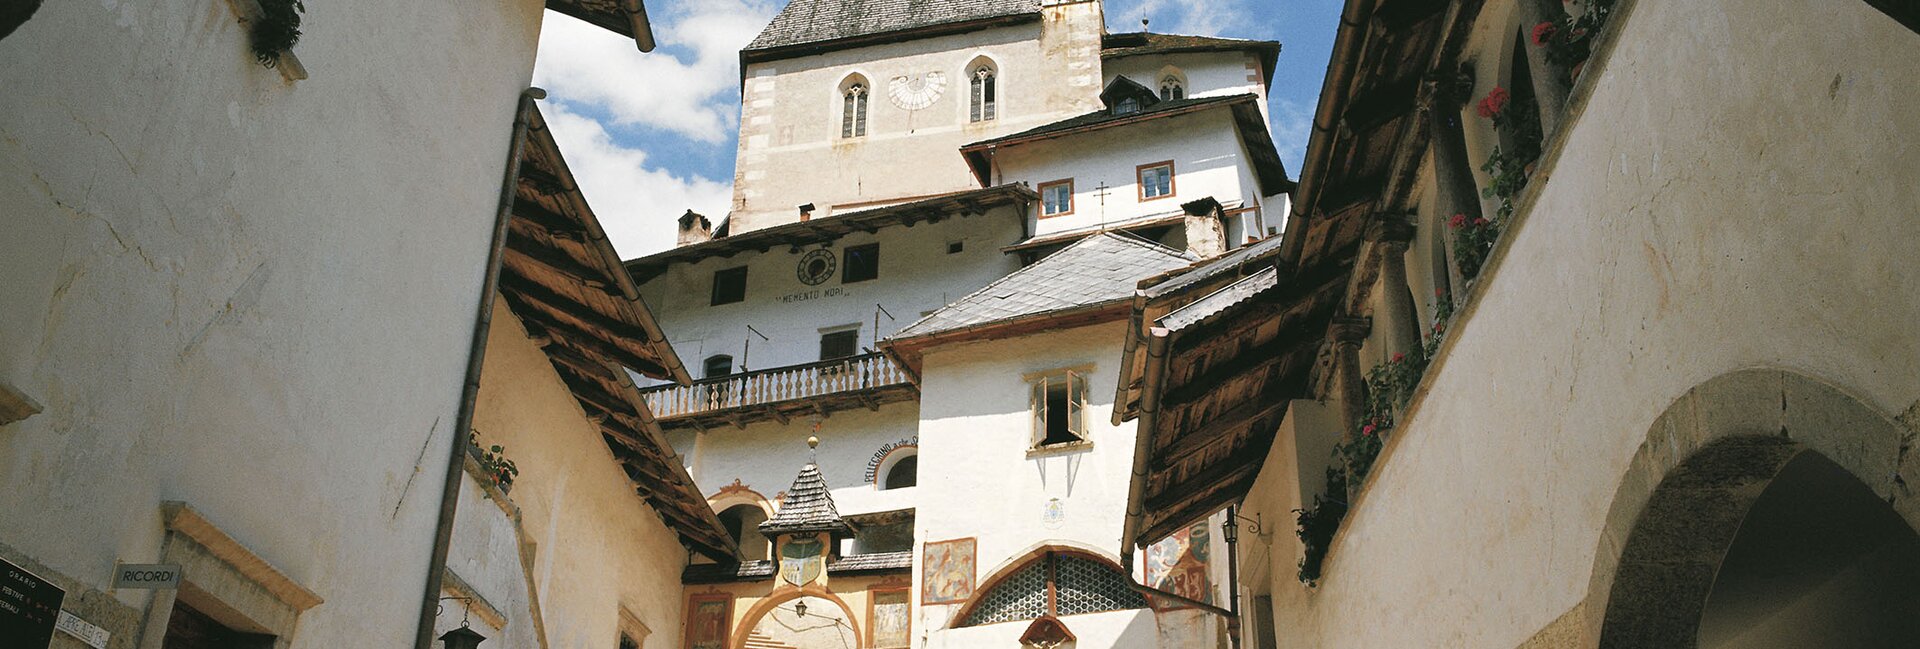 Luoghi sacri e storici da visitare in settembre e ottobre in Trentino